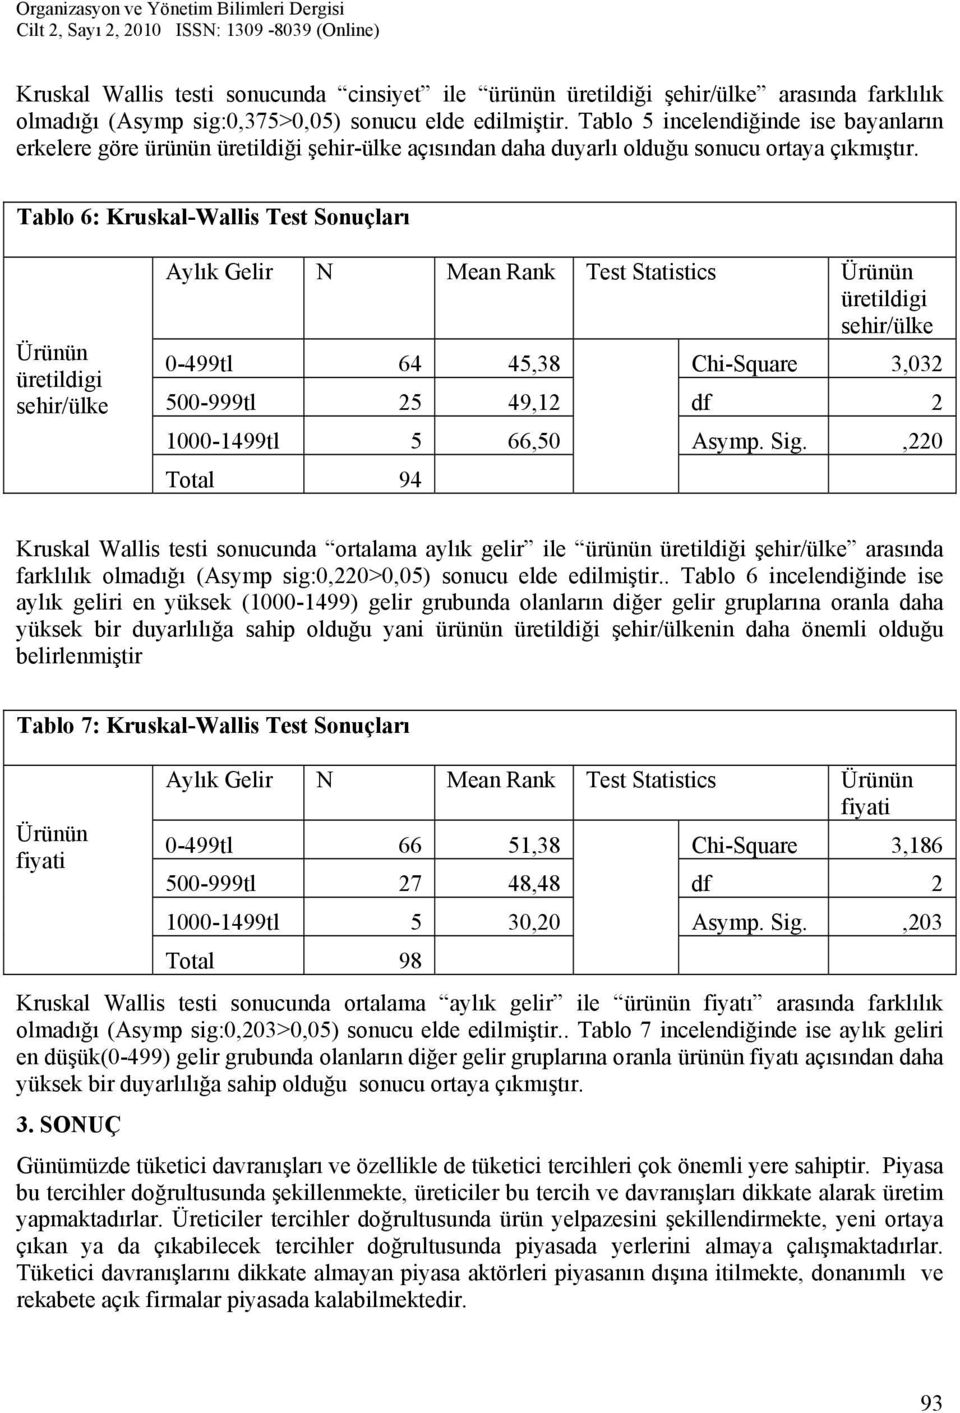 Tablo 6: Kruskal-Wallis Test Sonuçları Ürünün üretildigi sehir/ülke Aylık Gelir N Mean Rank Test Statistics Ürünün üretildigi sehir/ülke 0-499tl 64 45,38 Chi-Square 3,032 500-999tl 25 49,12 df 2